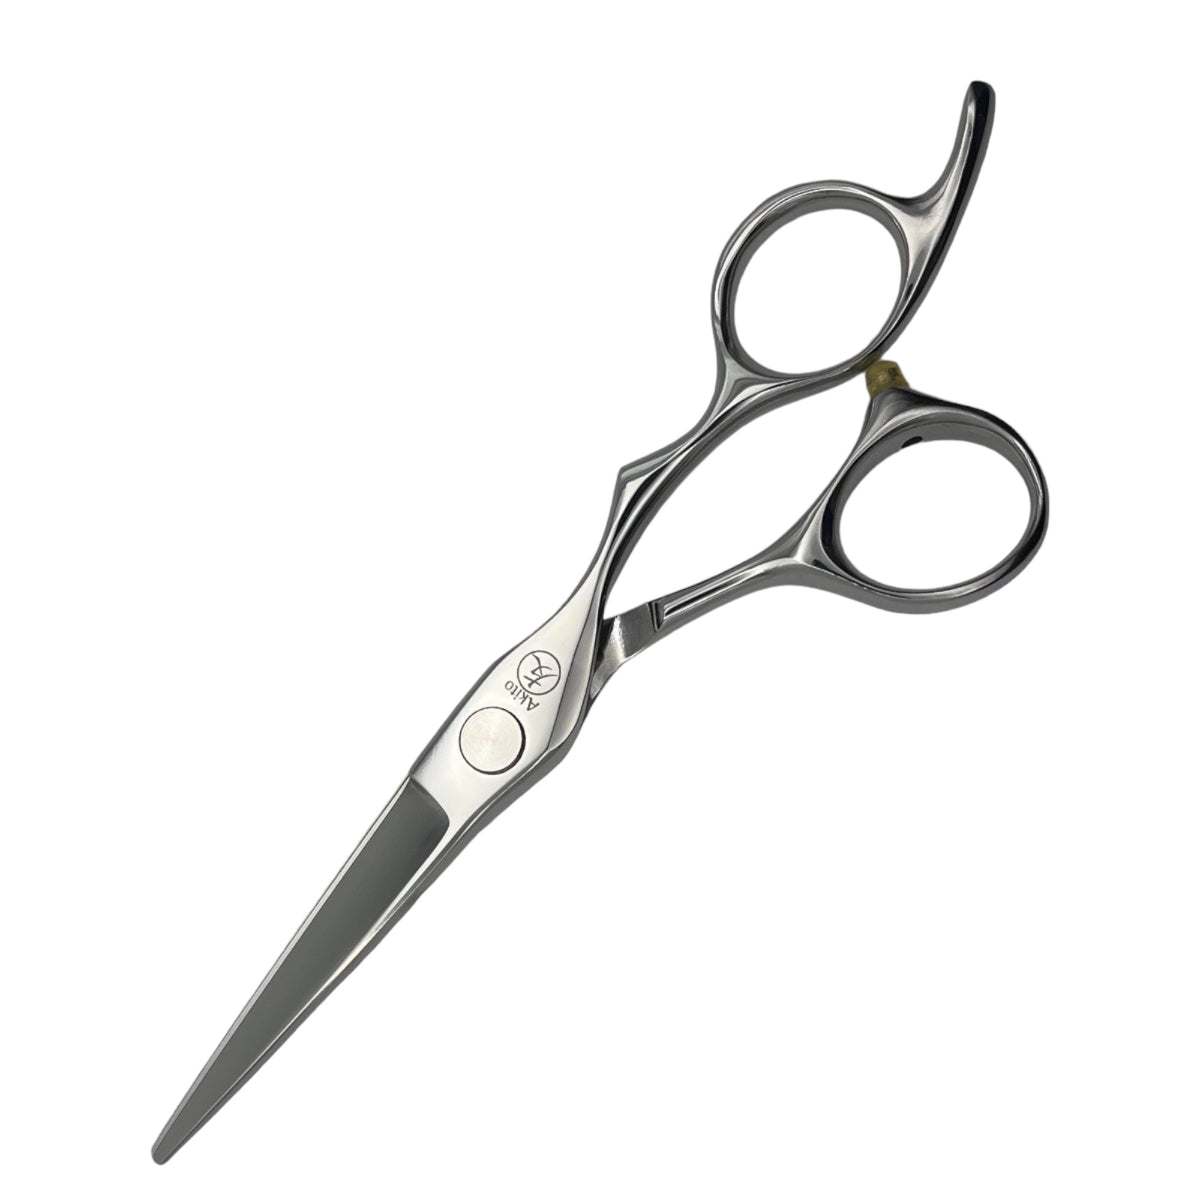 Misaki hair scissors in 5.5 inch